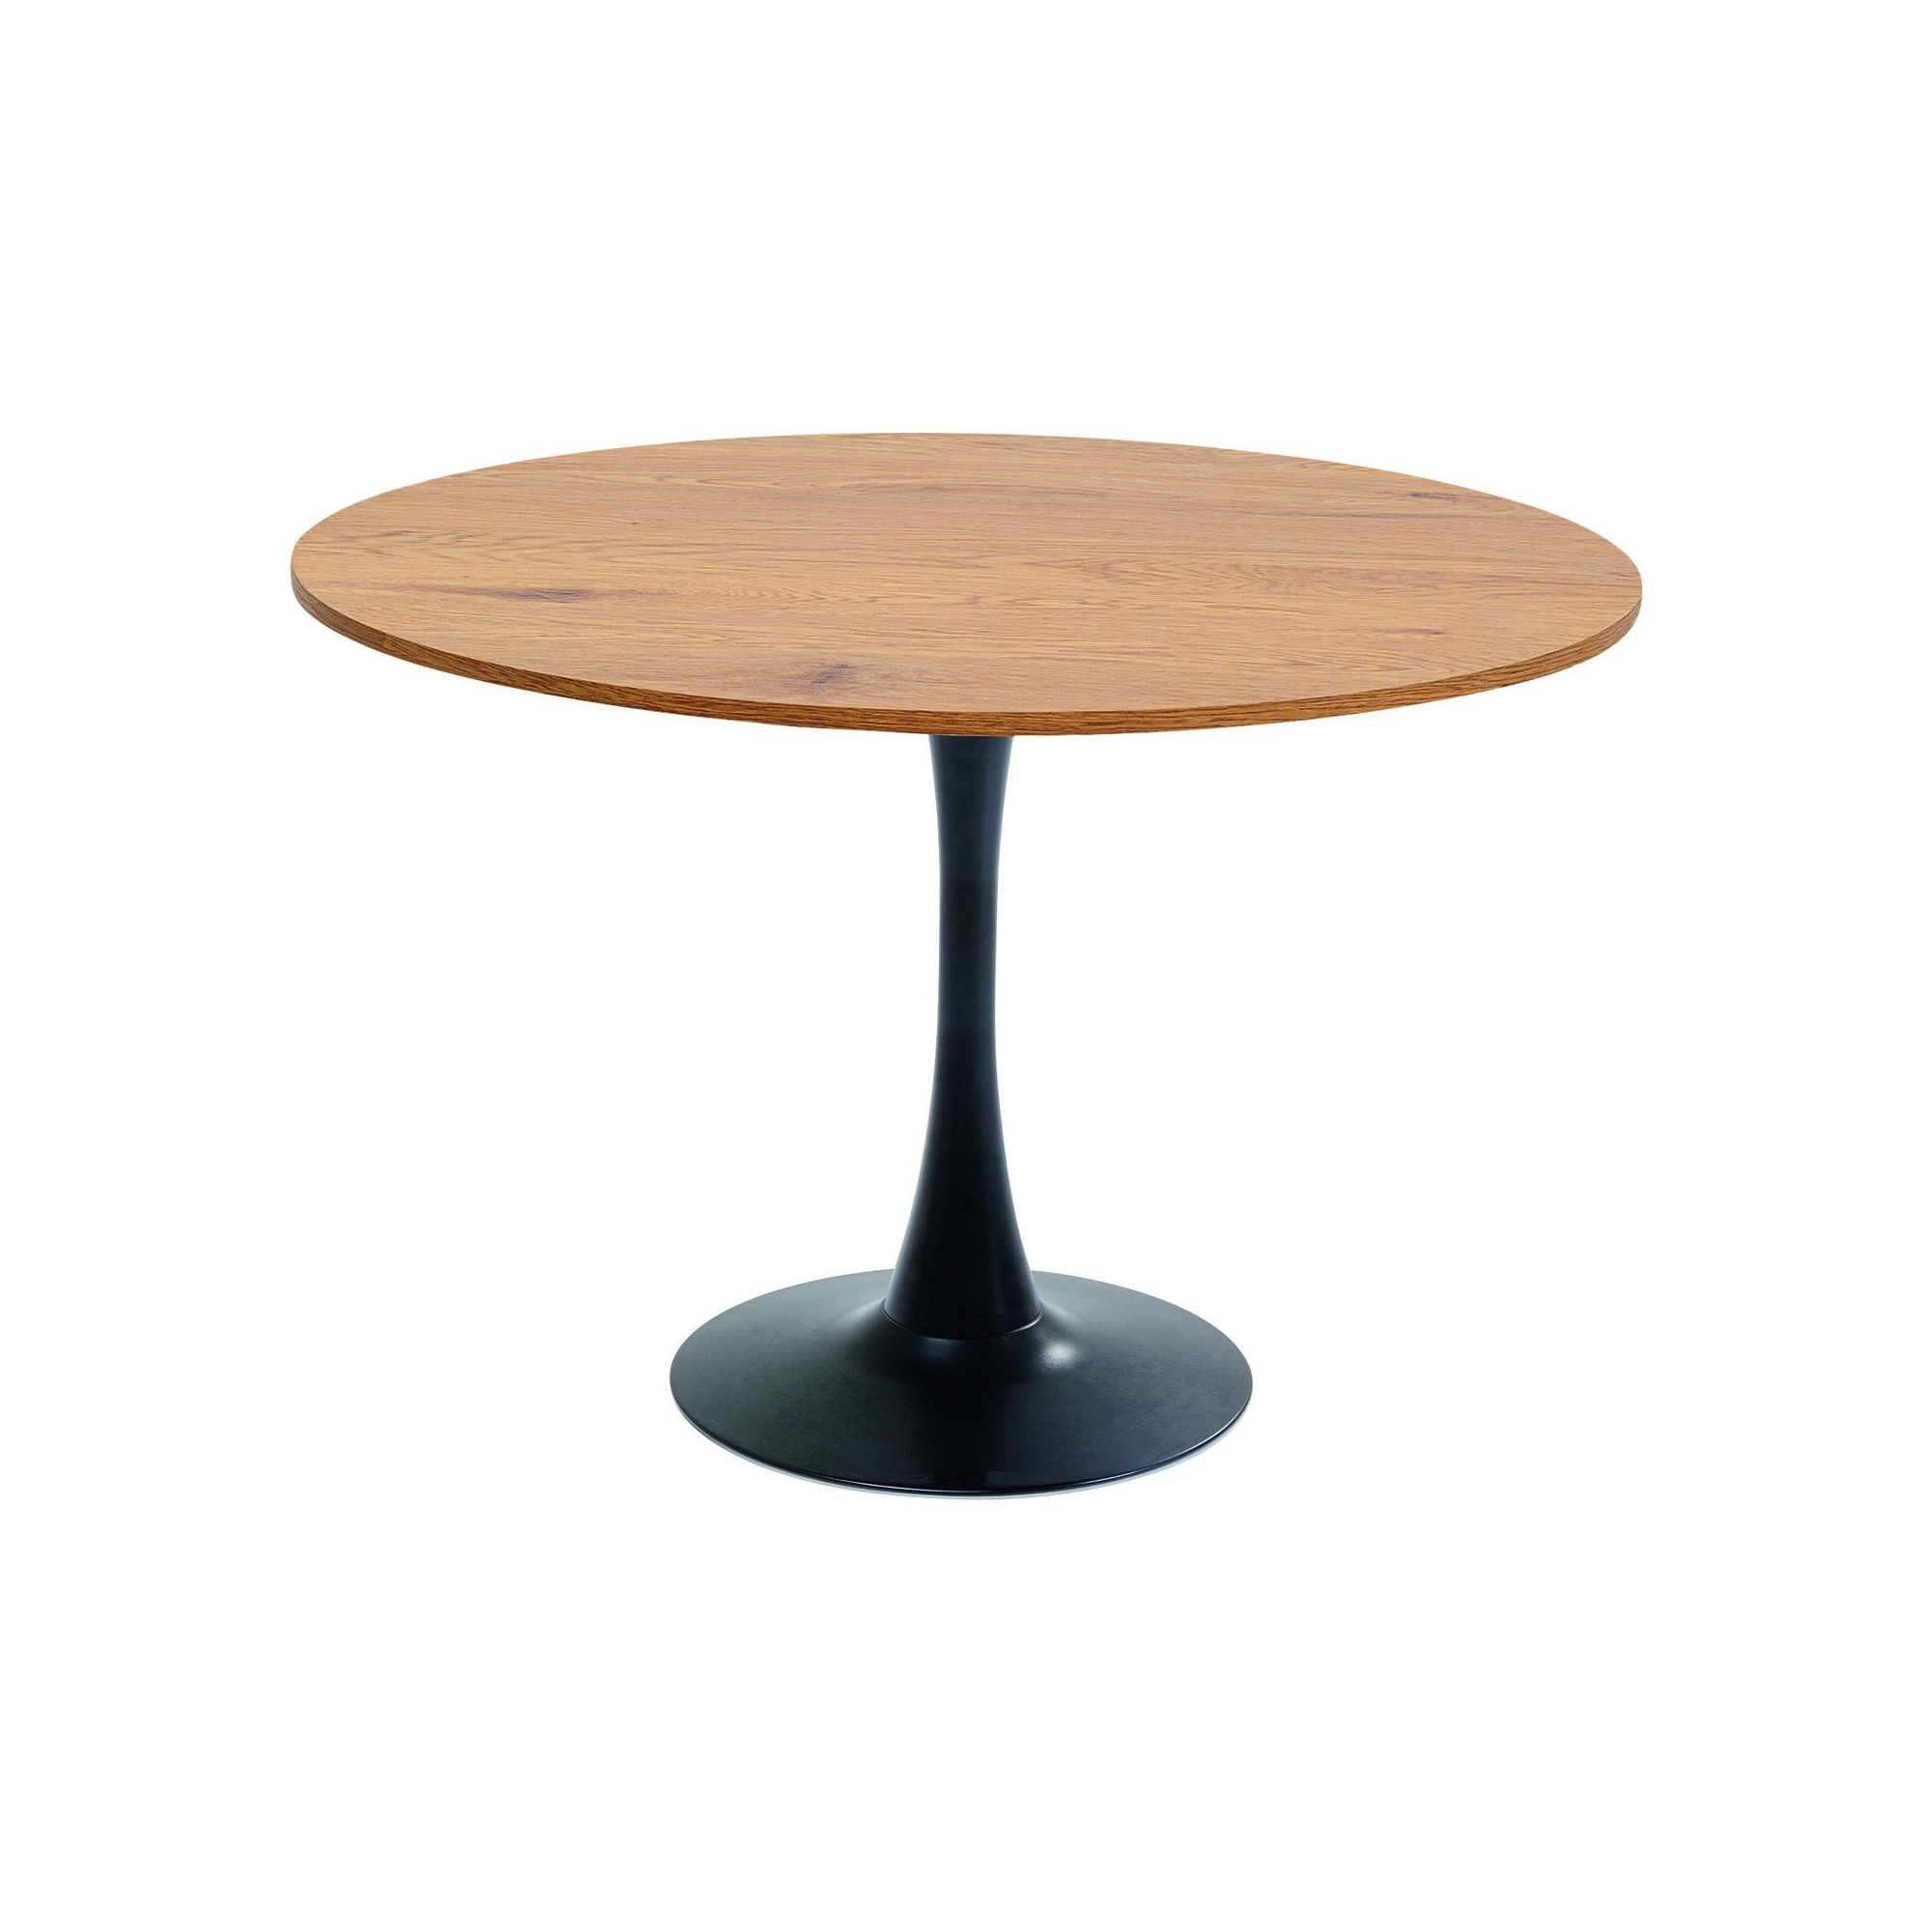 Table Schickeria chêne - noir Ø110cm